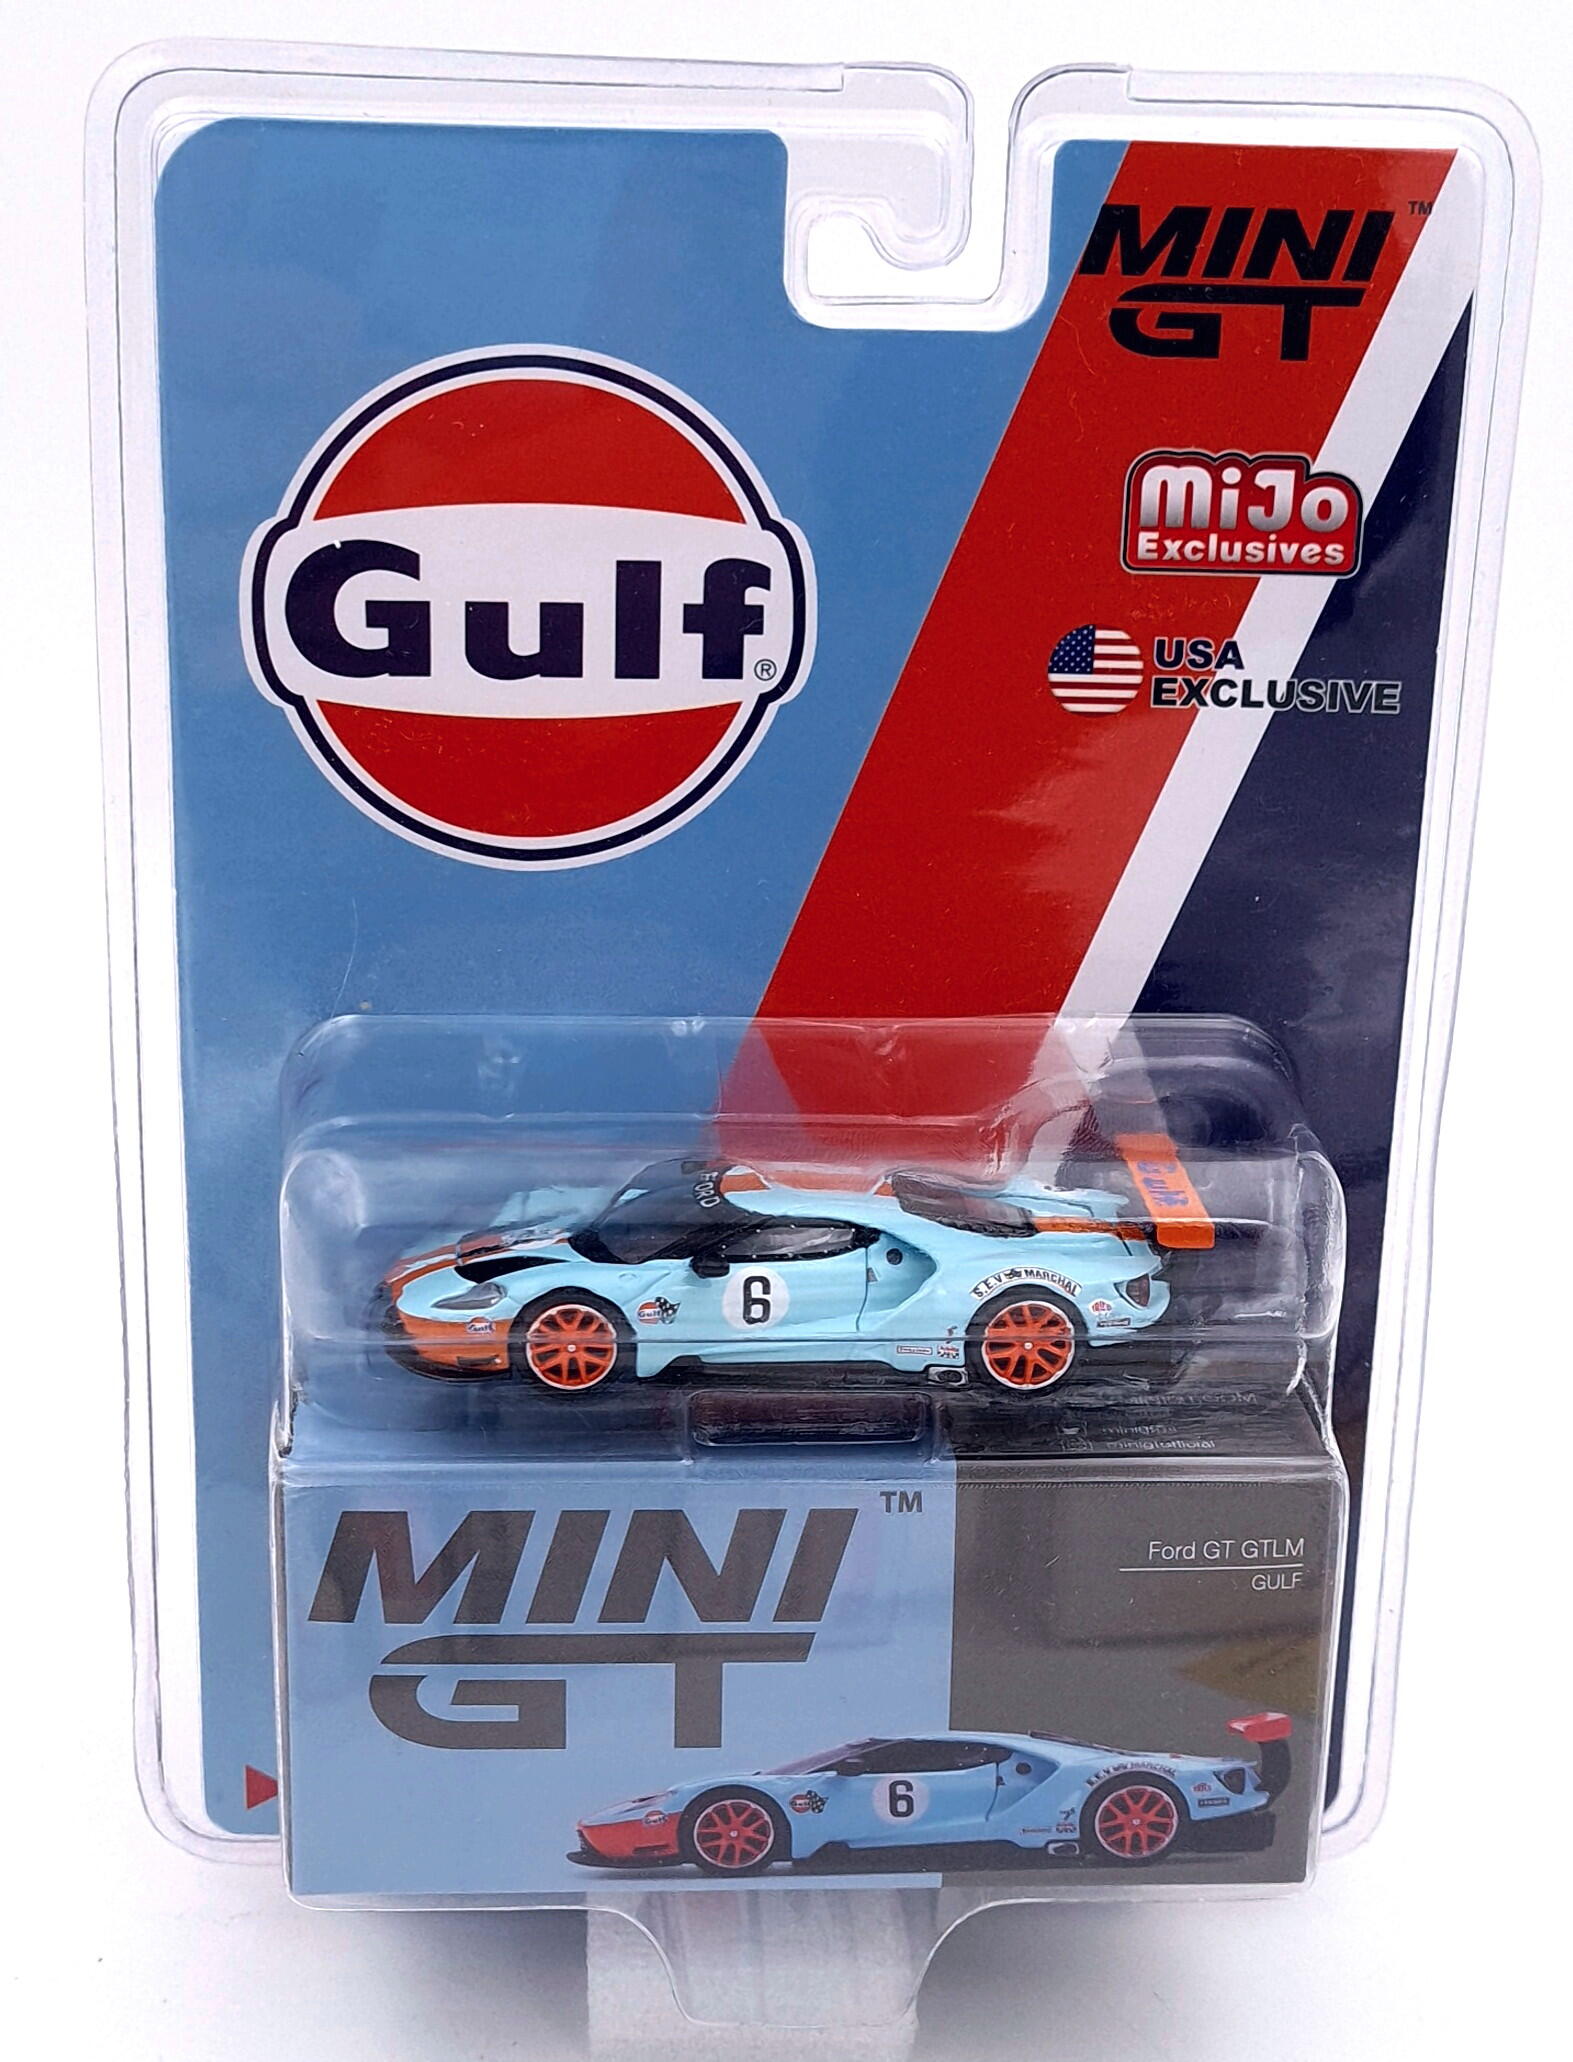 Mini GT Mini GT – MGT00296-MJ – Ford GT GTLM – Gulf –